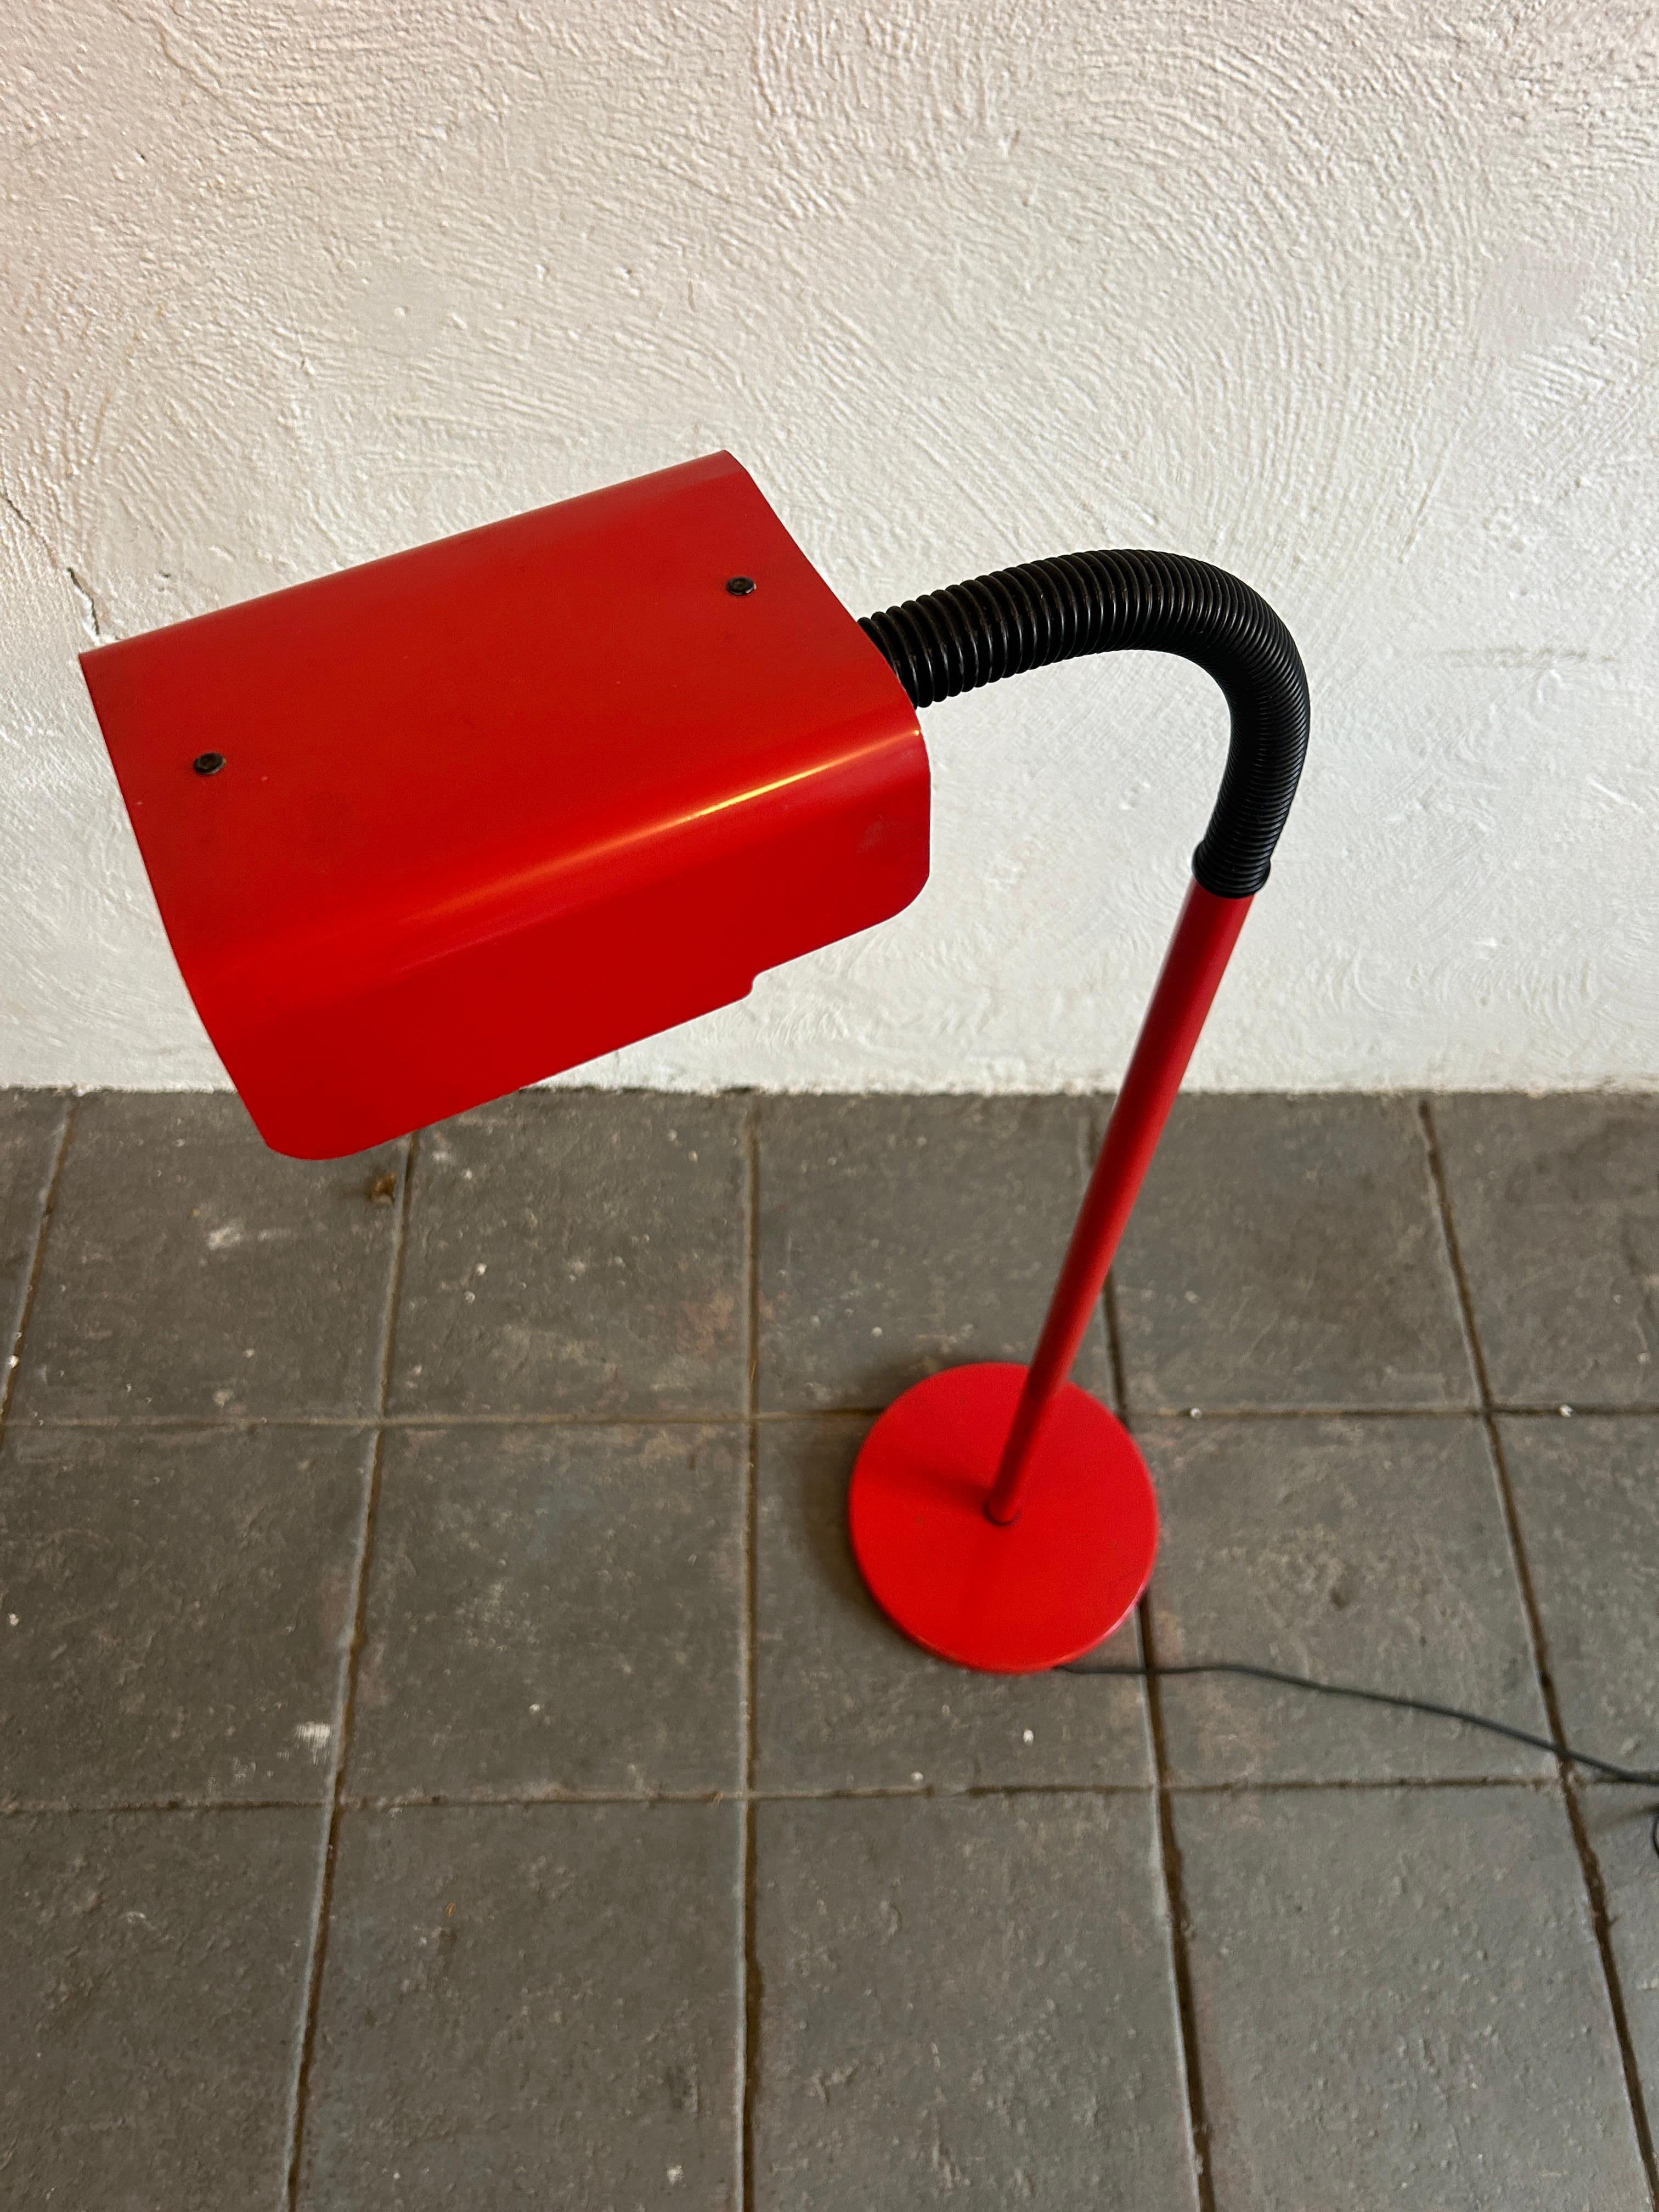 Post Modern Bright Red flexible Hals Stehleuchte. Mit Drehknopfschalter, schwarzer Schnur und schwarzem, biegsamem Kunststoffrohr. Fun Stehlampe hat einen Metallsockel und einen Lampenschirm. Nimmt (1) Standard-Glühbirne. funktioniert 100%.

Die